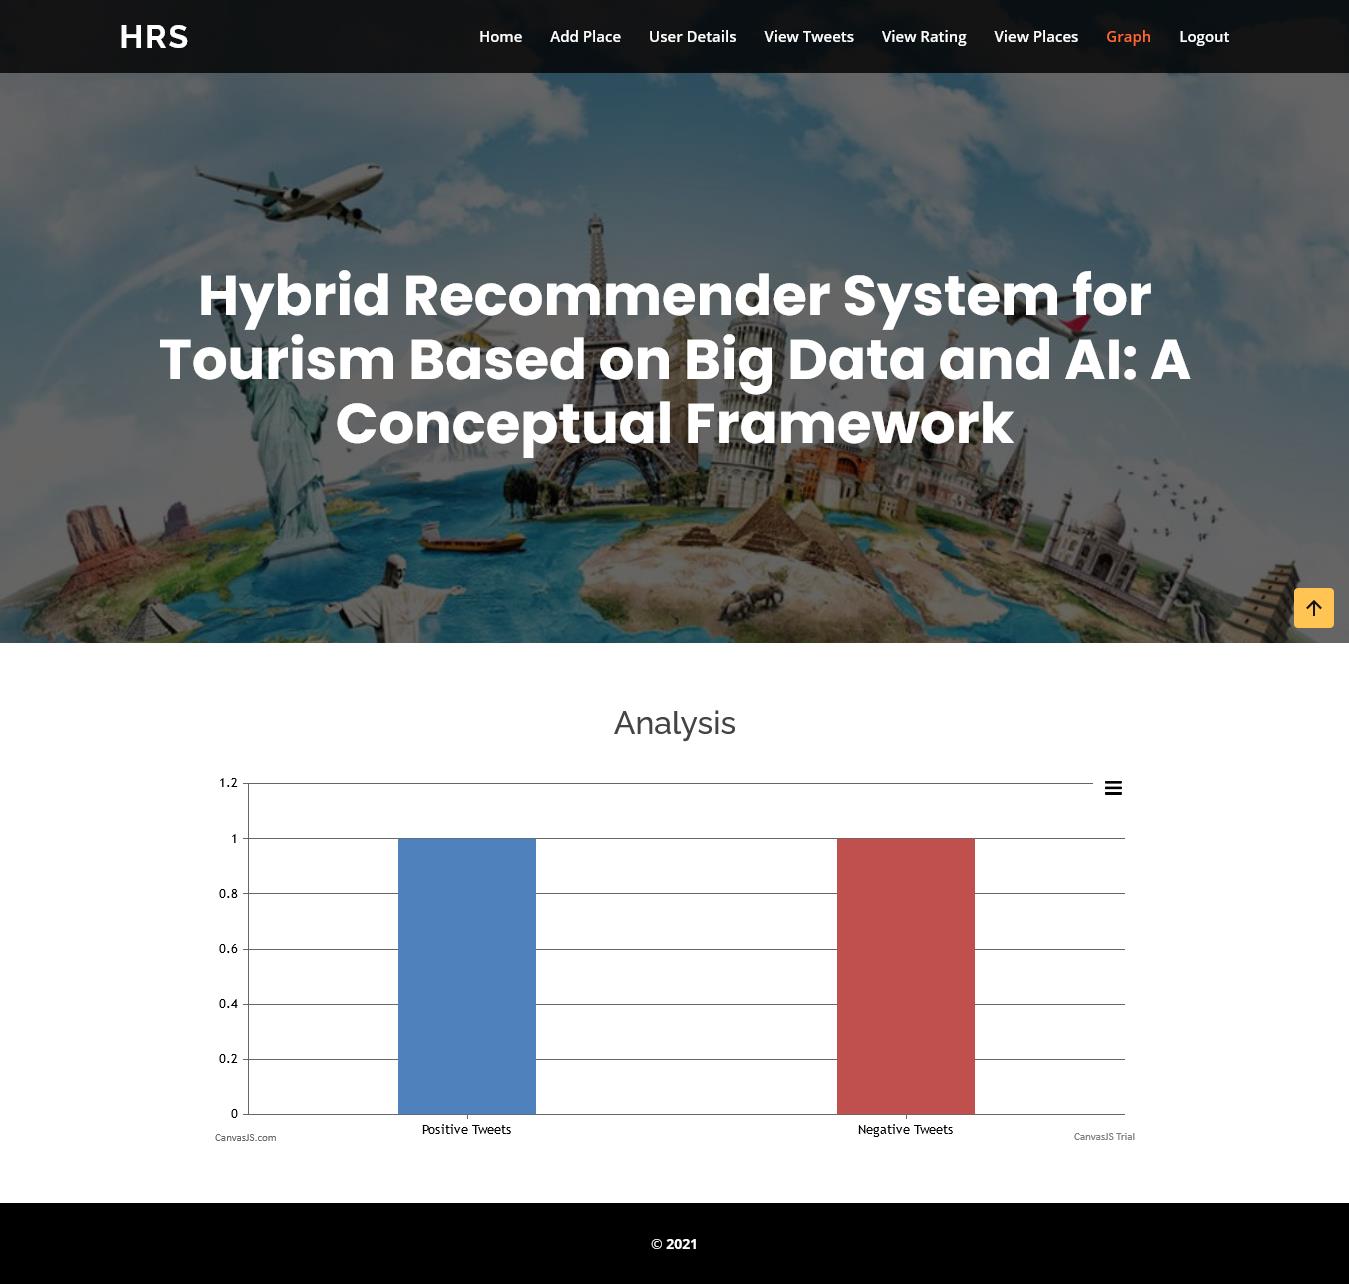 JPJ2137-Hybrid Recommender System for Tourism